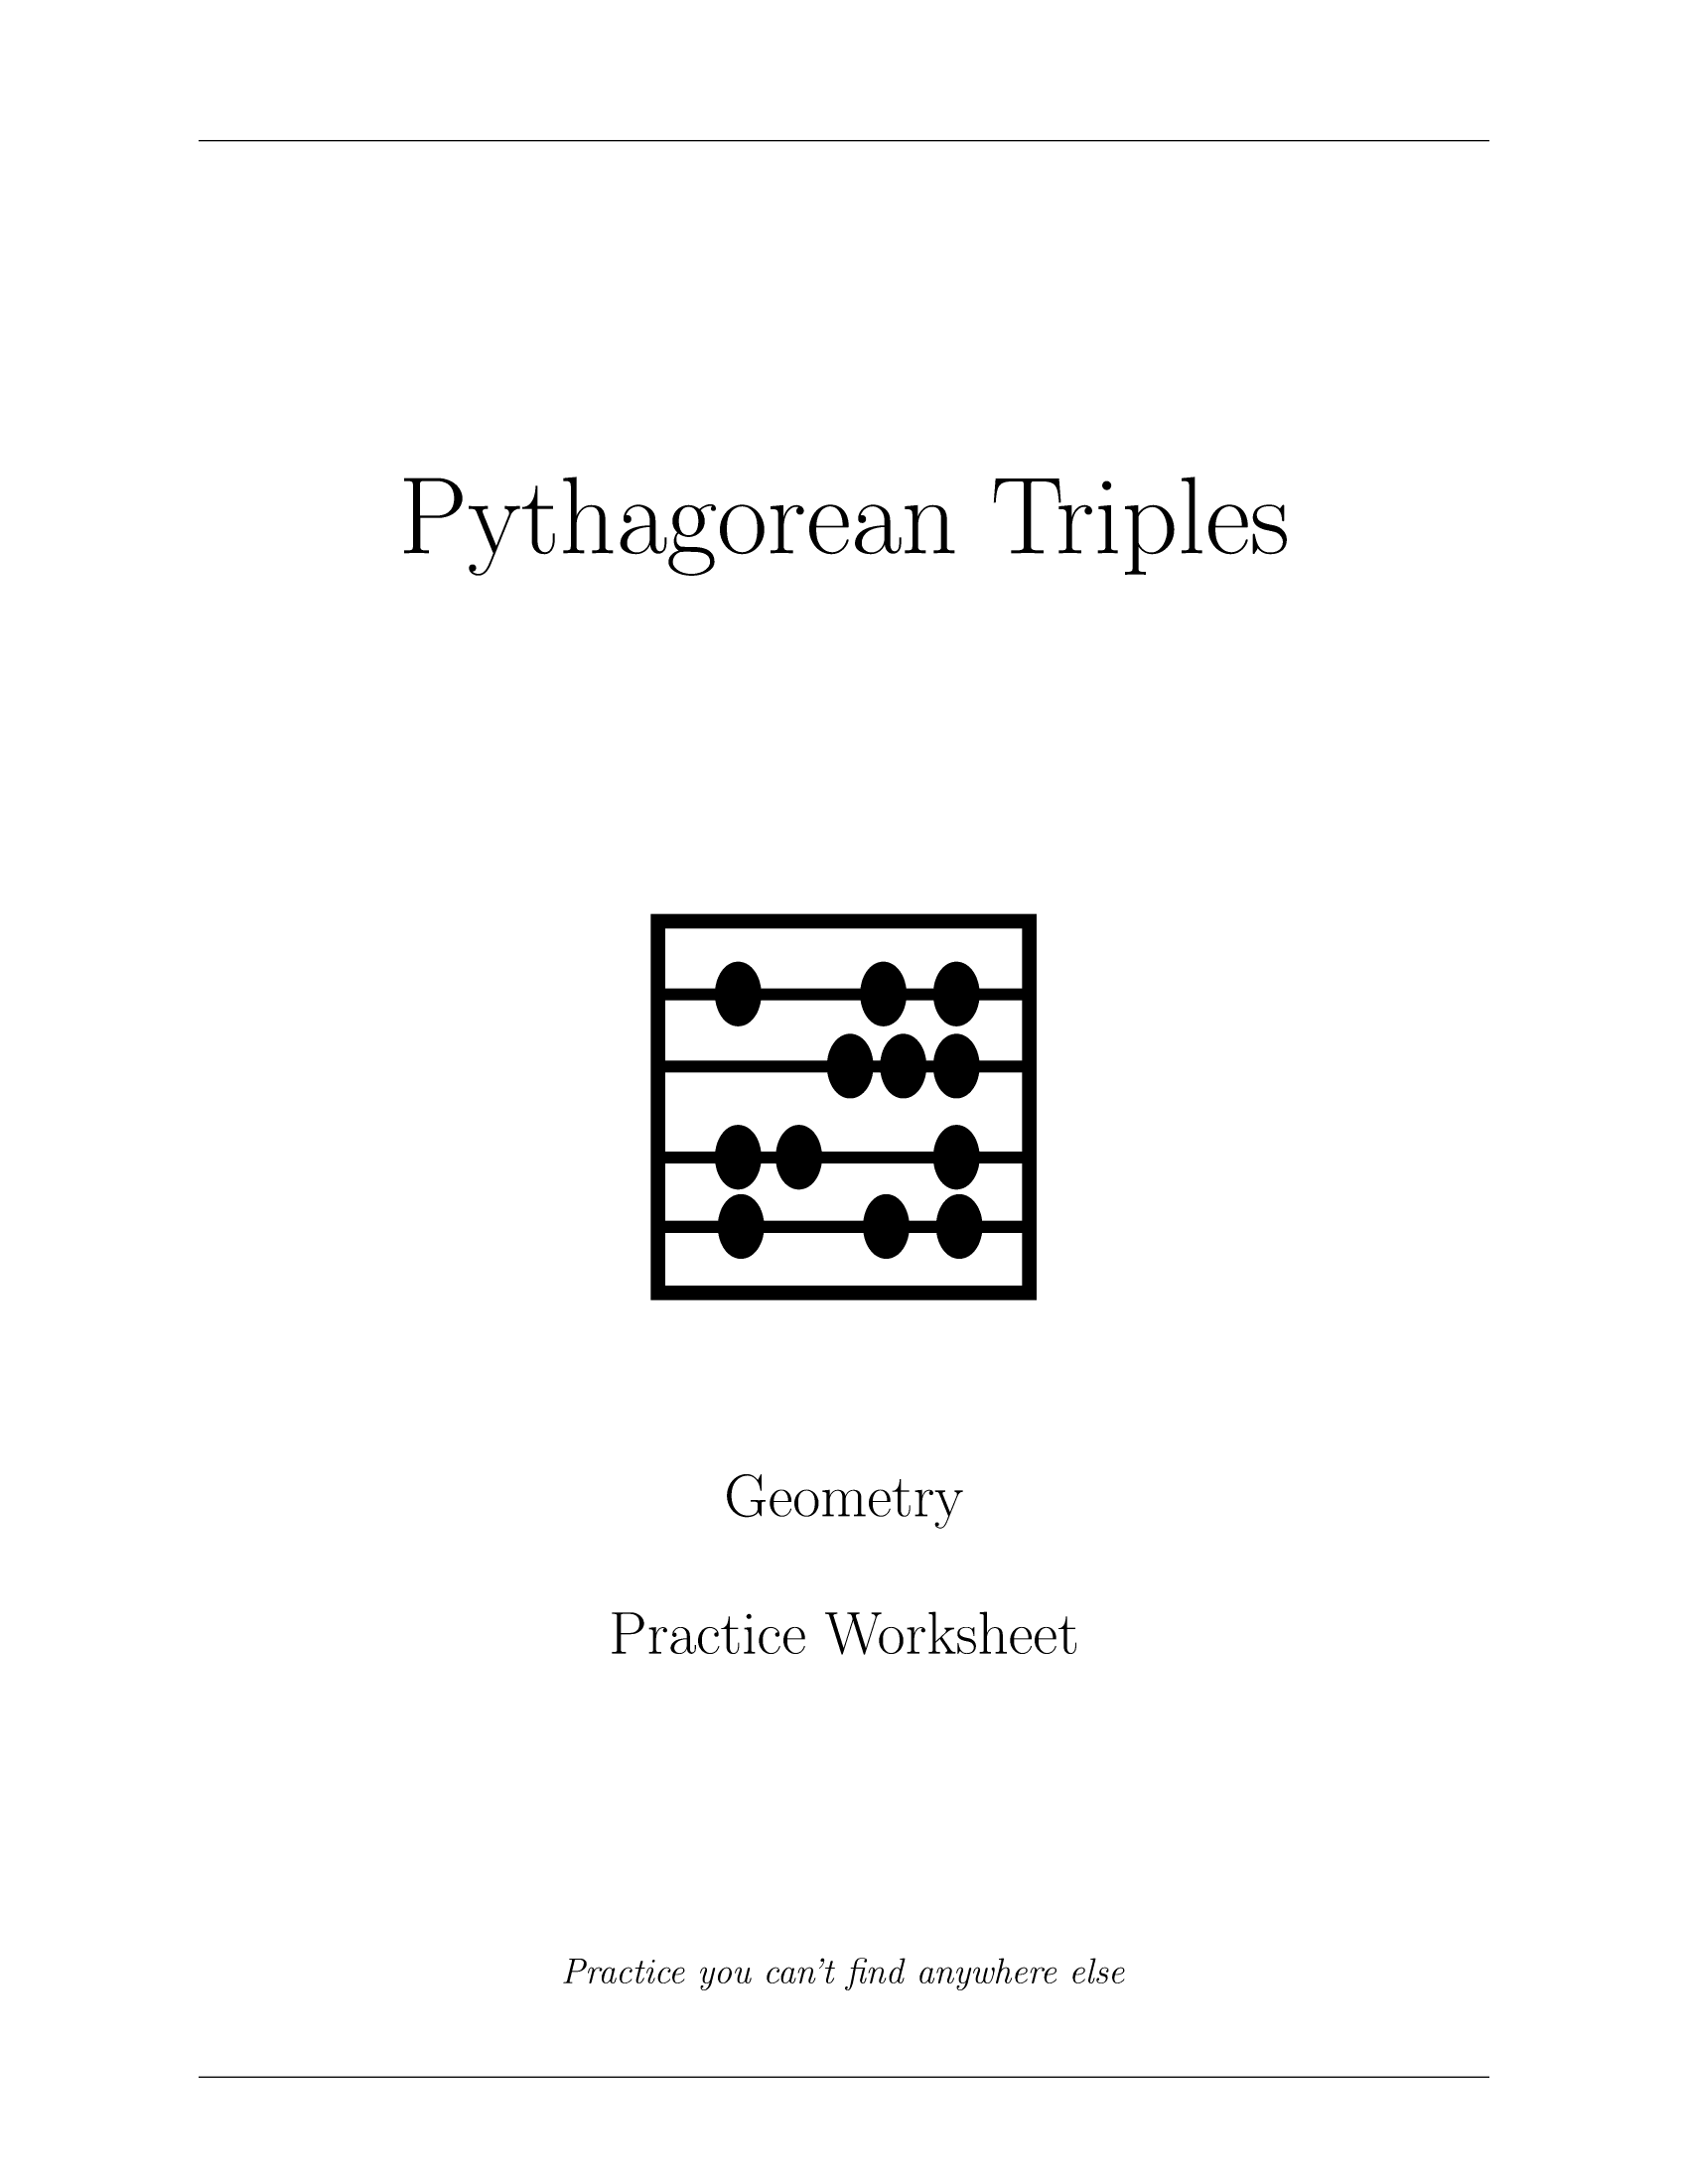 Pythagorean Triples Worksheet Tutoring by Matthew